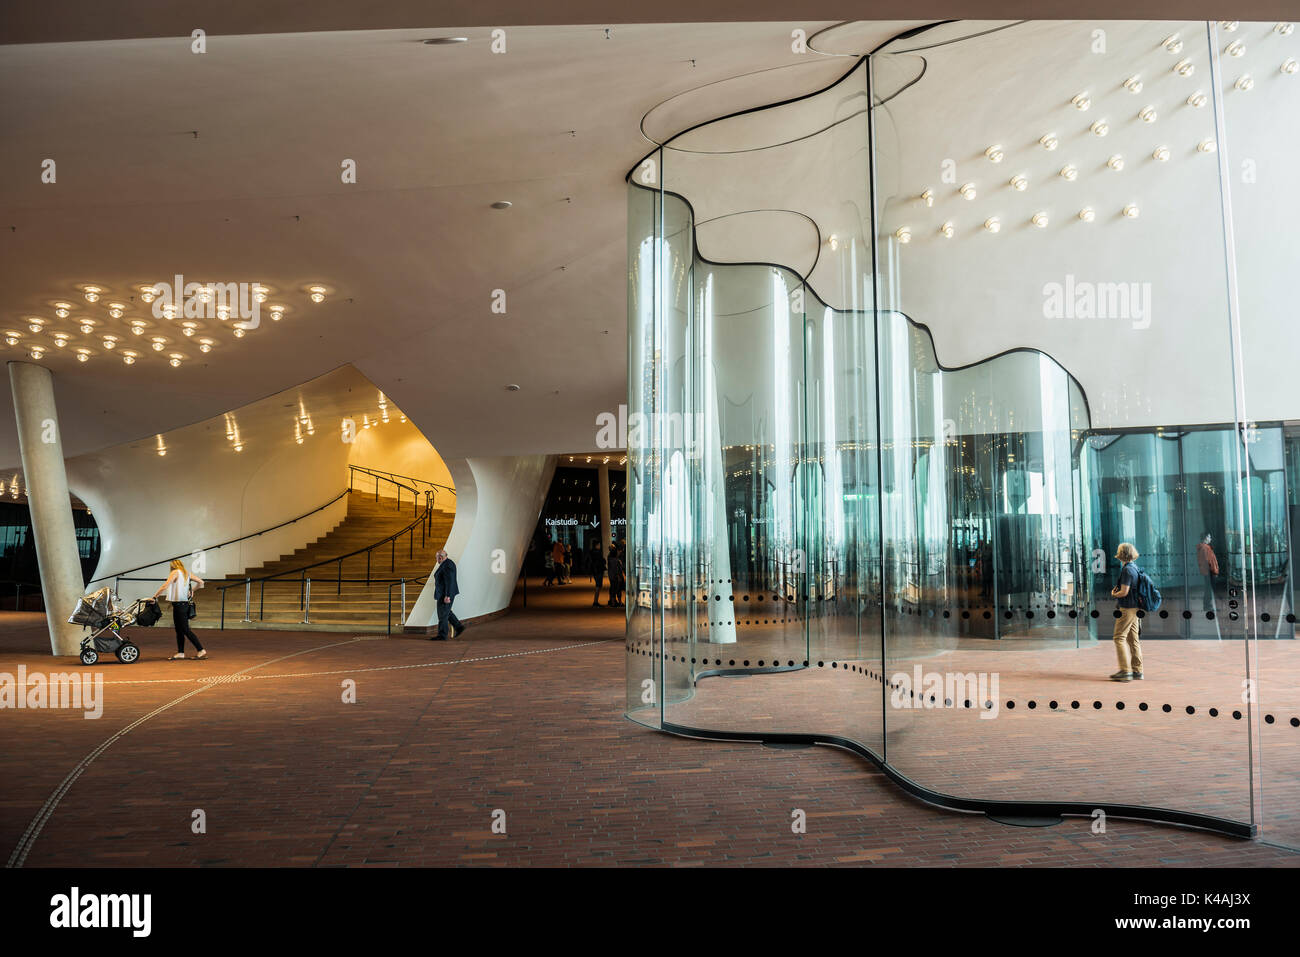 Visualizzazione pubblico piattaforma, plaza con deflettore realizzato di vetro curvo, elbe philharmonic hall, architetti Herzog & de Meuron Foto Stock